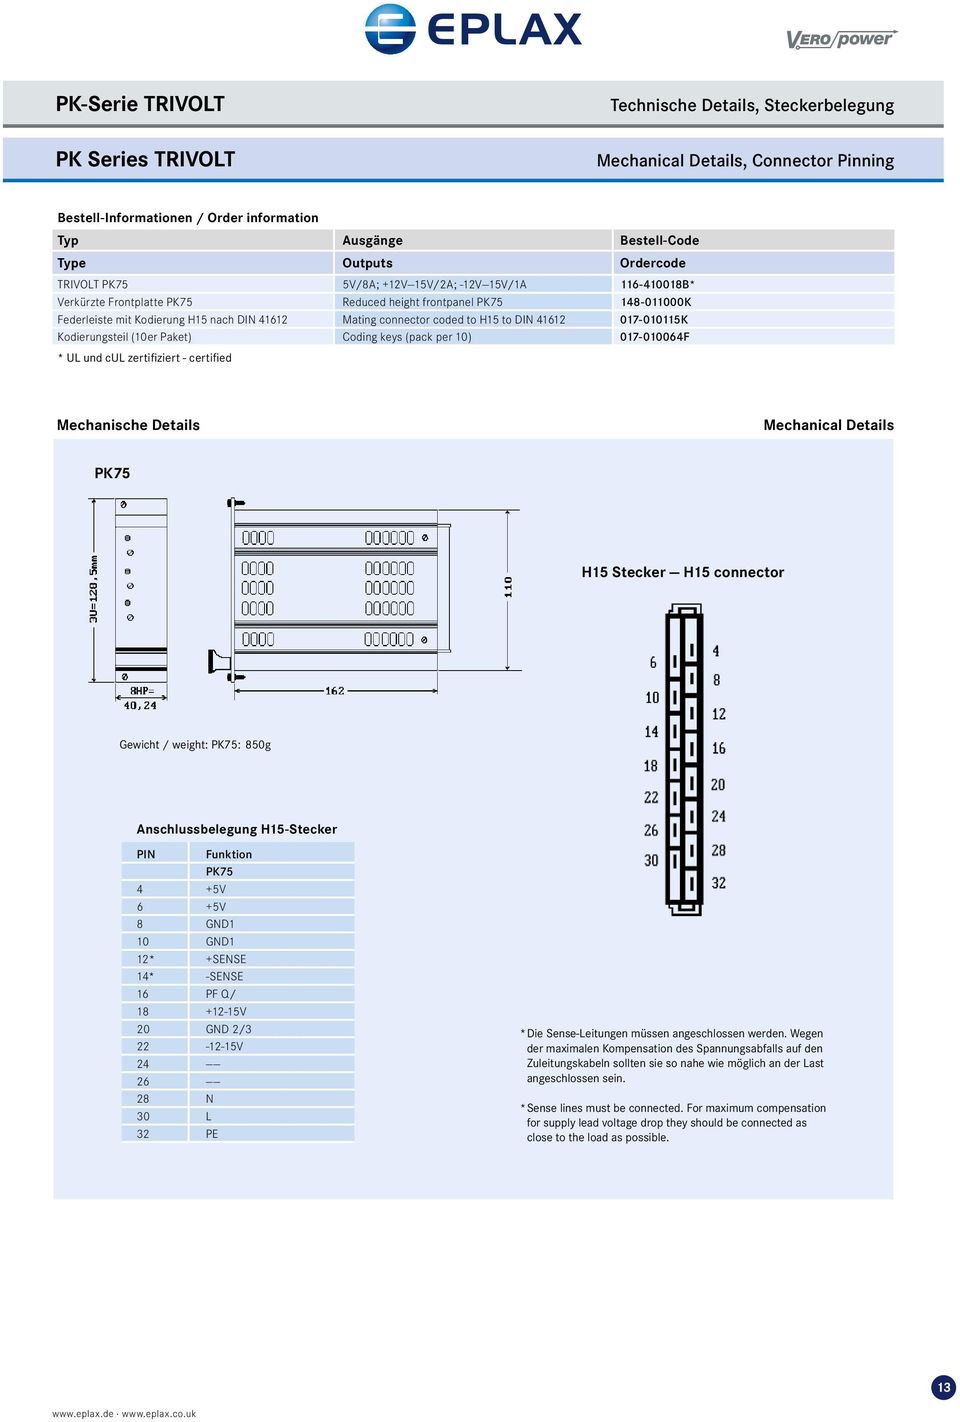 H15 to DIN 41612 017-010115K Kodierungsteil (10er Paket) Coding keys (pack per 10) 017-010064F * UL und cul zertifiziert - certified Mechanische Details Mechanical Details PK75 H15 Stecker H15